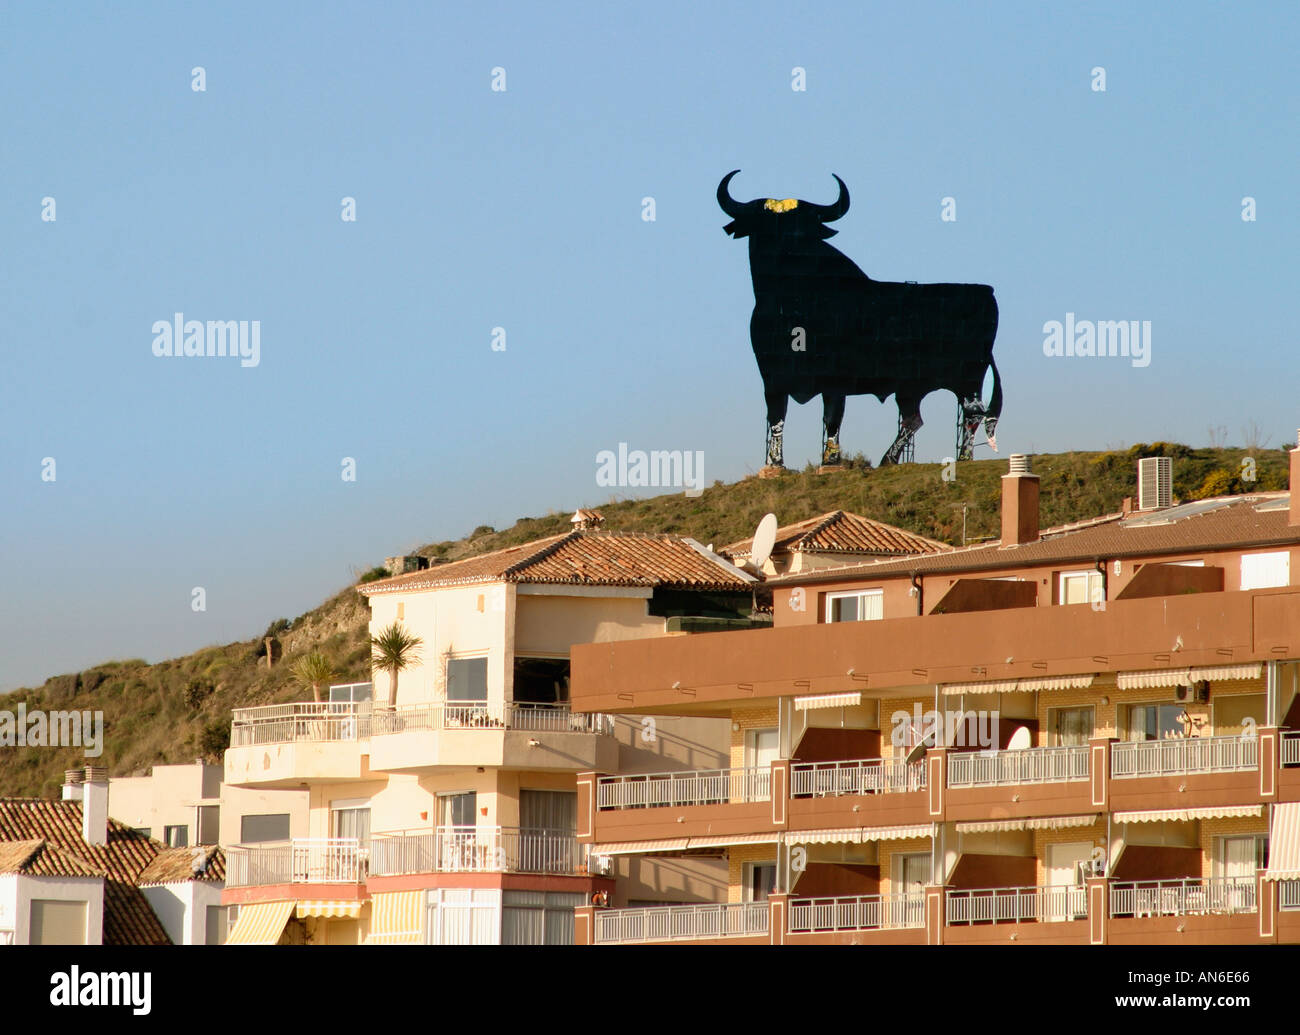 Image result for toro costa del sol